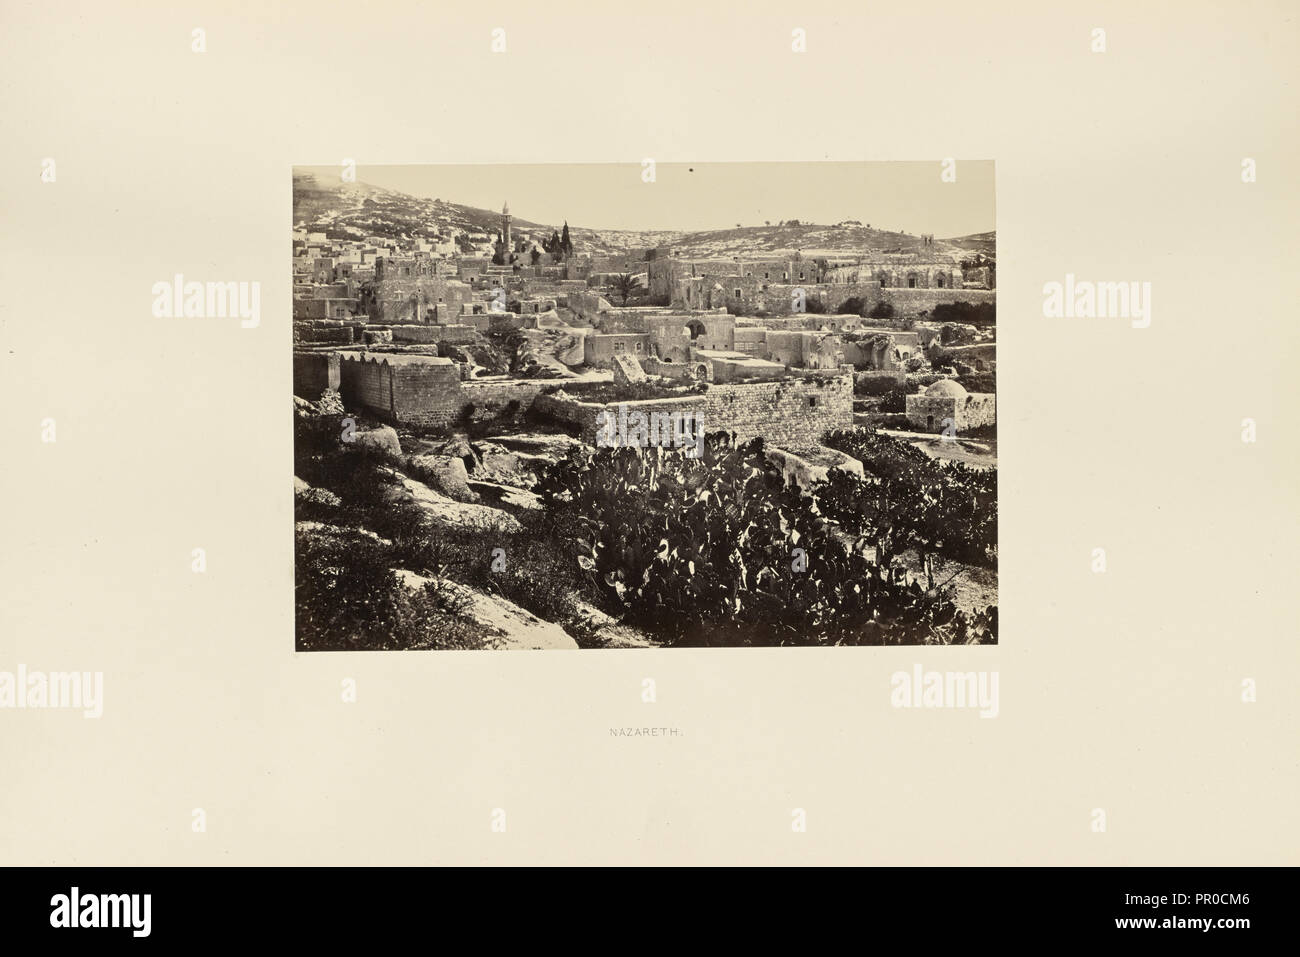 Nazareth, Francis Frith, anglais, 1822 - 1898, Nazareth, Israël, 1858 ; à l'albumine argentique Banque D'Images